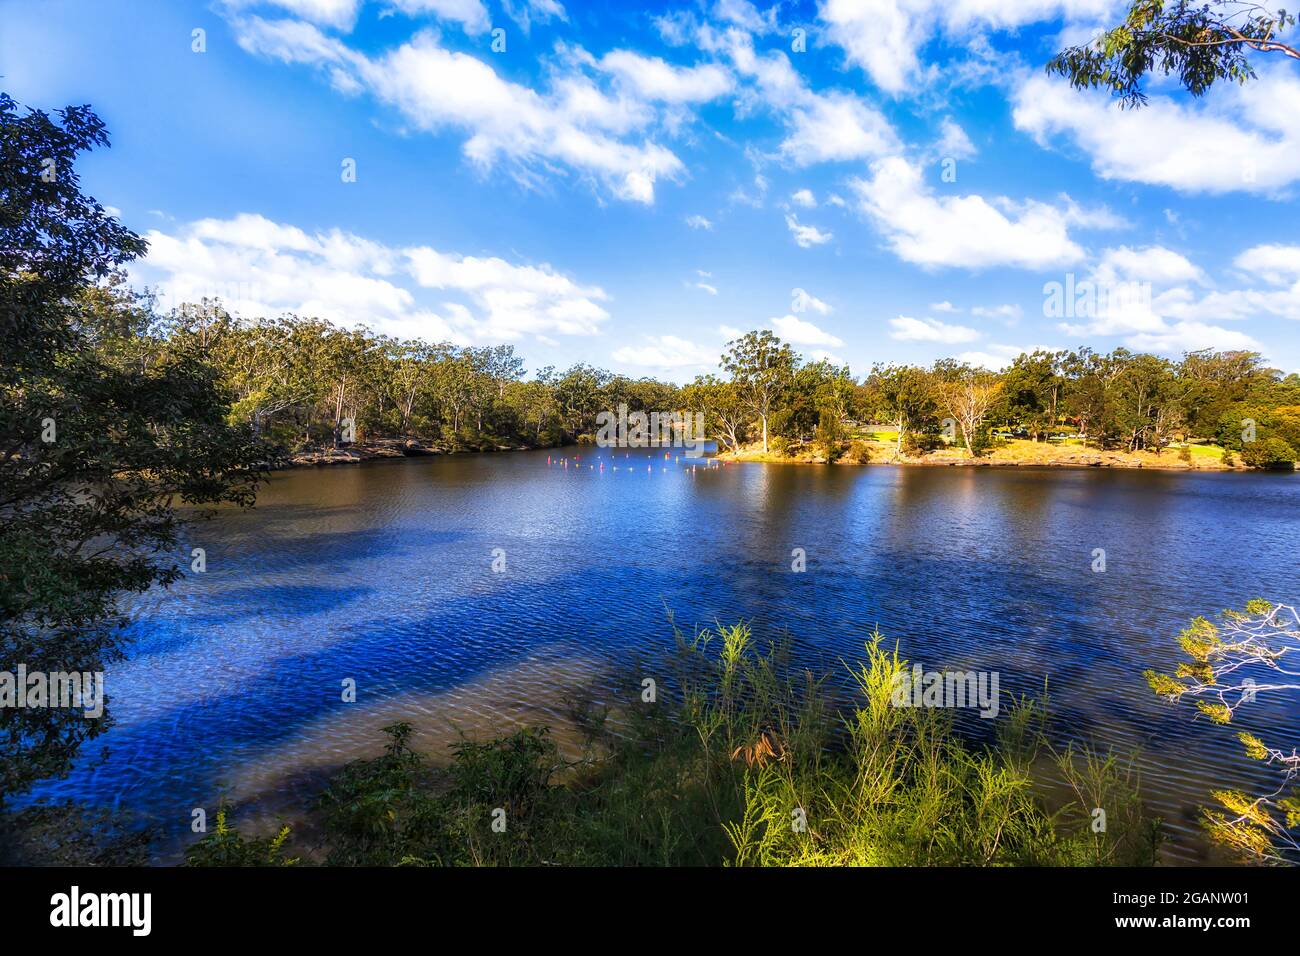 Malerischer blauer Lake Parramatta im Großraum Sydney an einem sonnigen Tag - Wanderweg rund um den See. Stockfoto